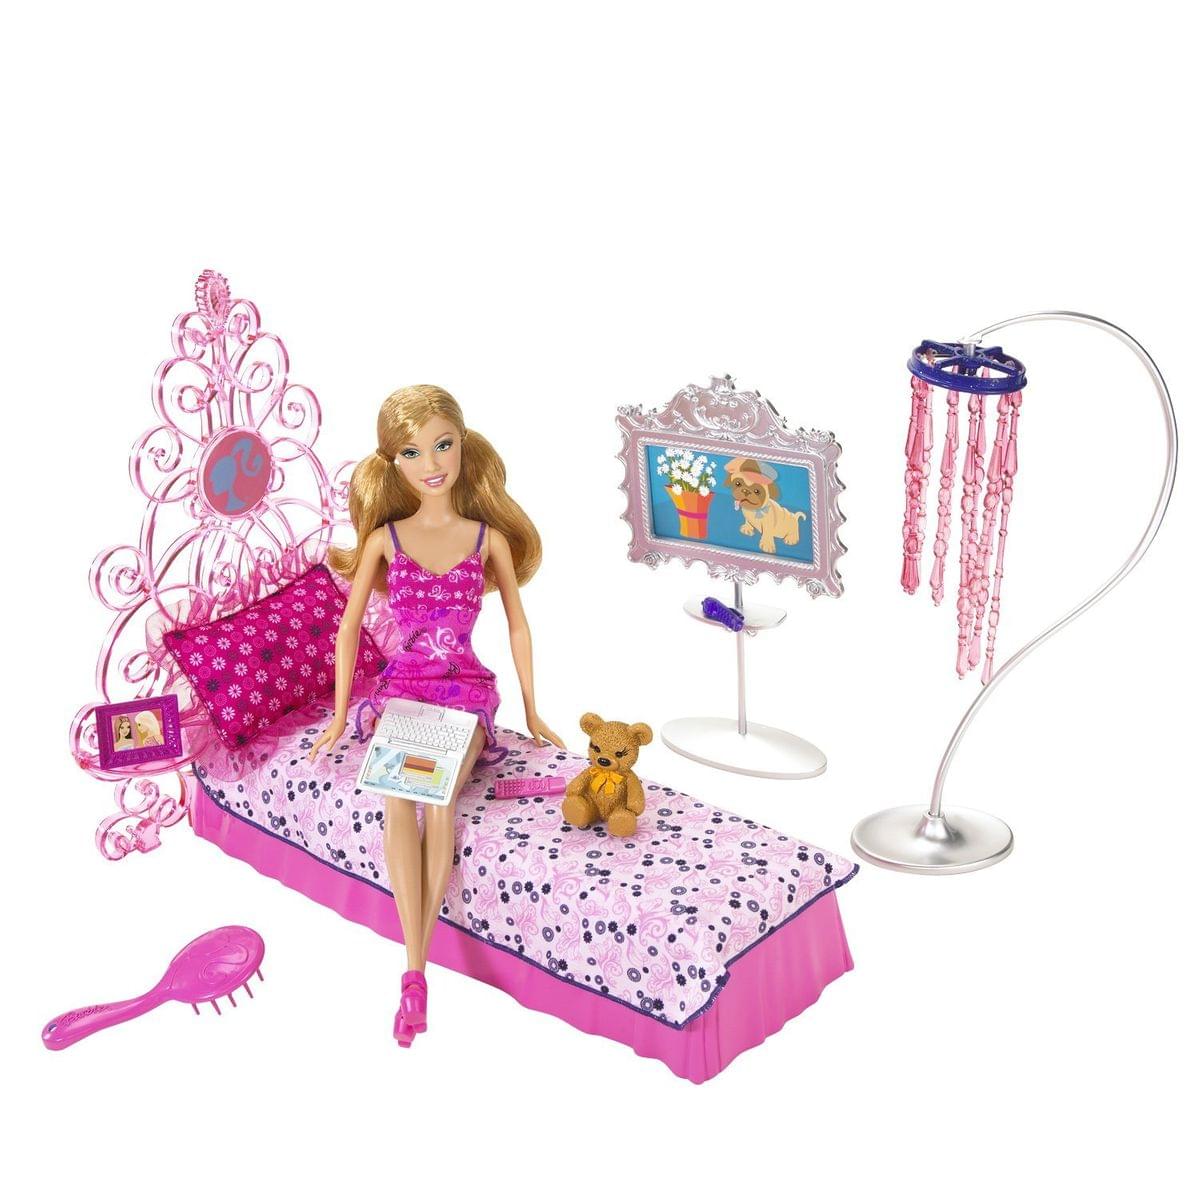 Barbie Glam Bedroom Playset